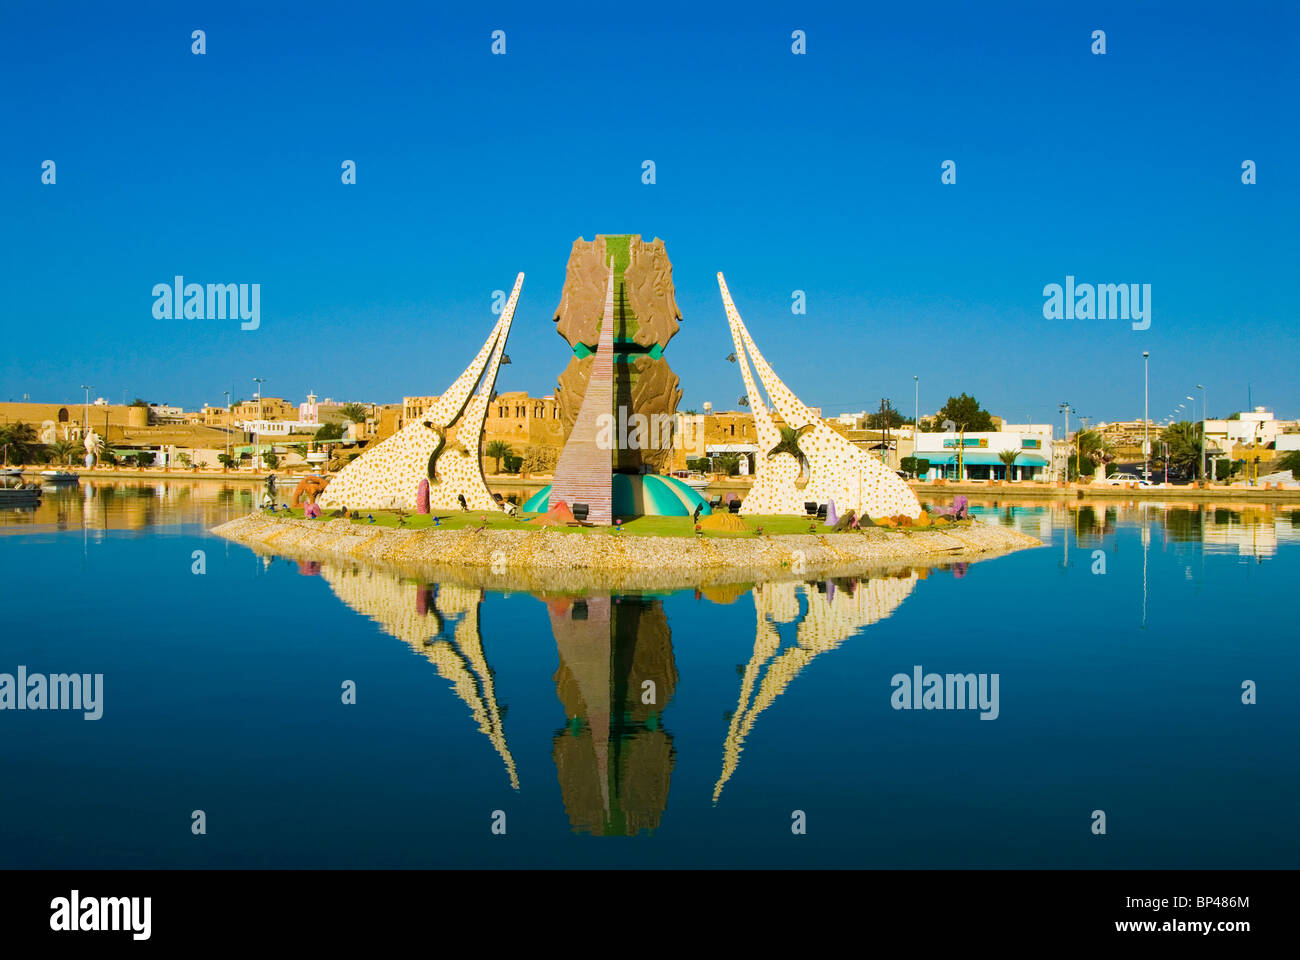 Arabia Saudita, Duba, ciudad en la orilla del mar Rojo Fotografía de stock  - Alamy